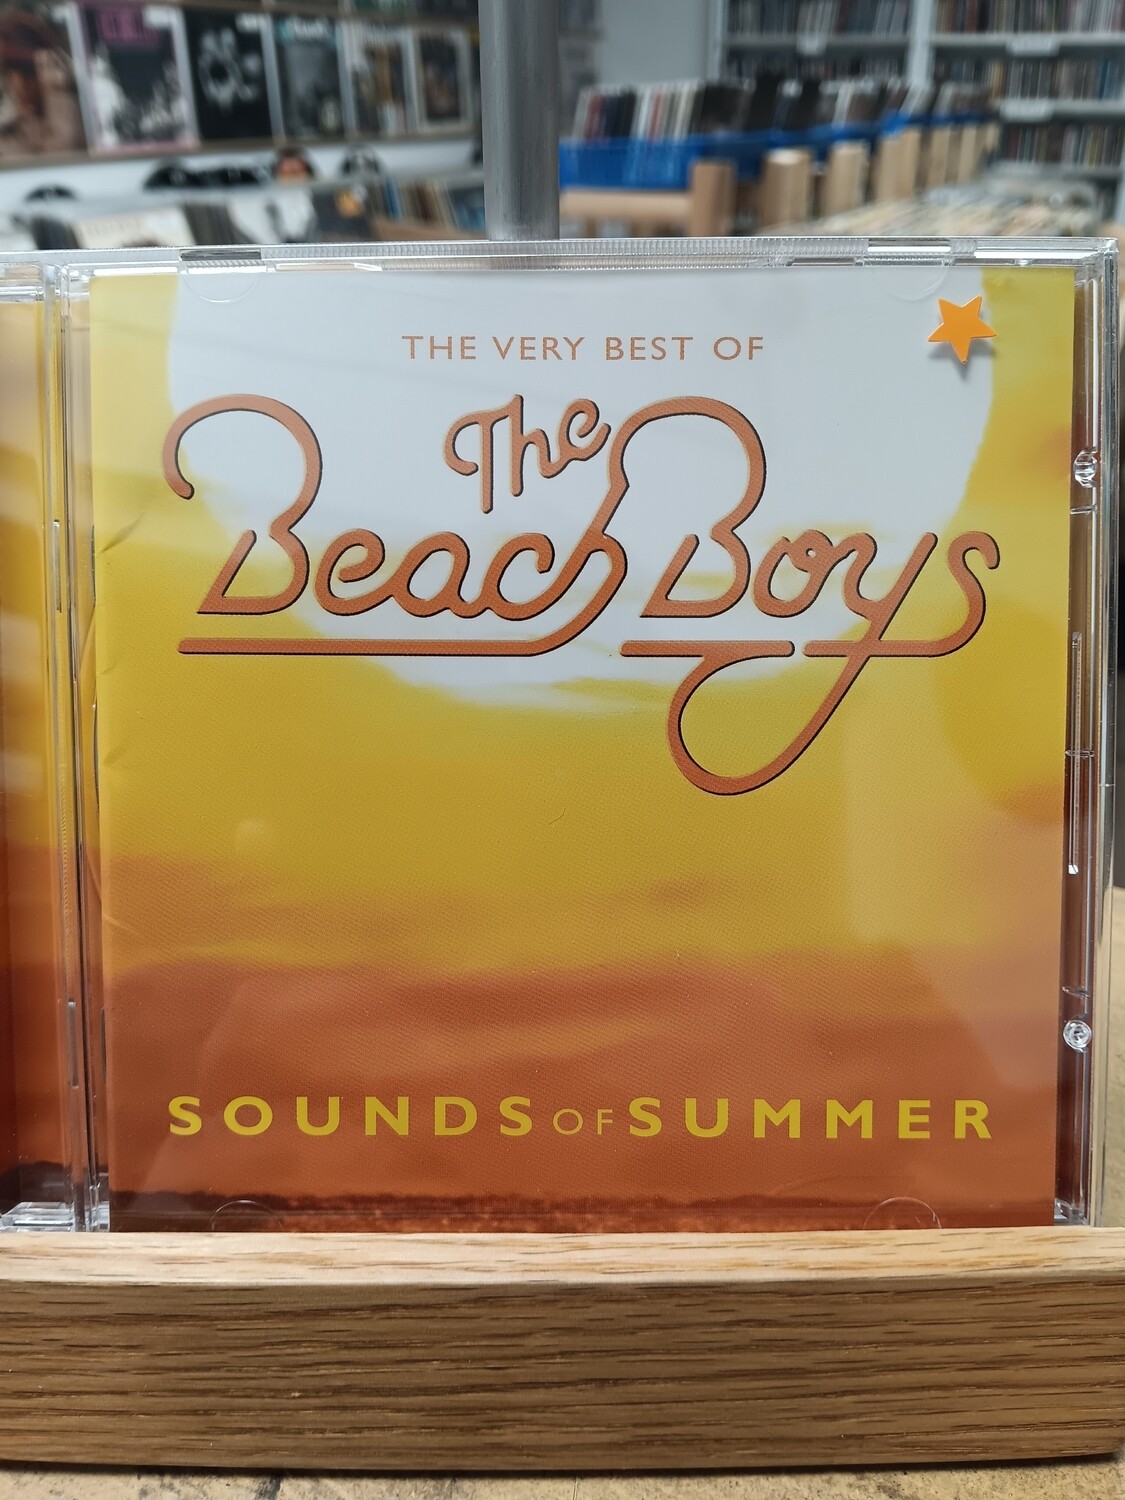 THE BEACH BOYS - The very Best of The Beach Boys (CD)